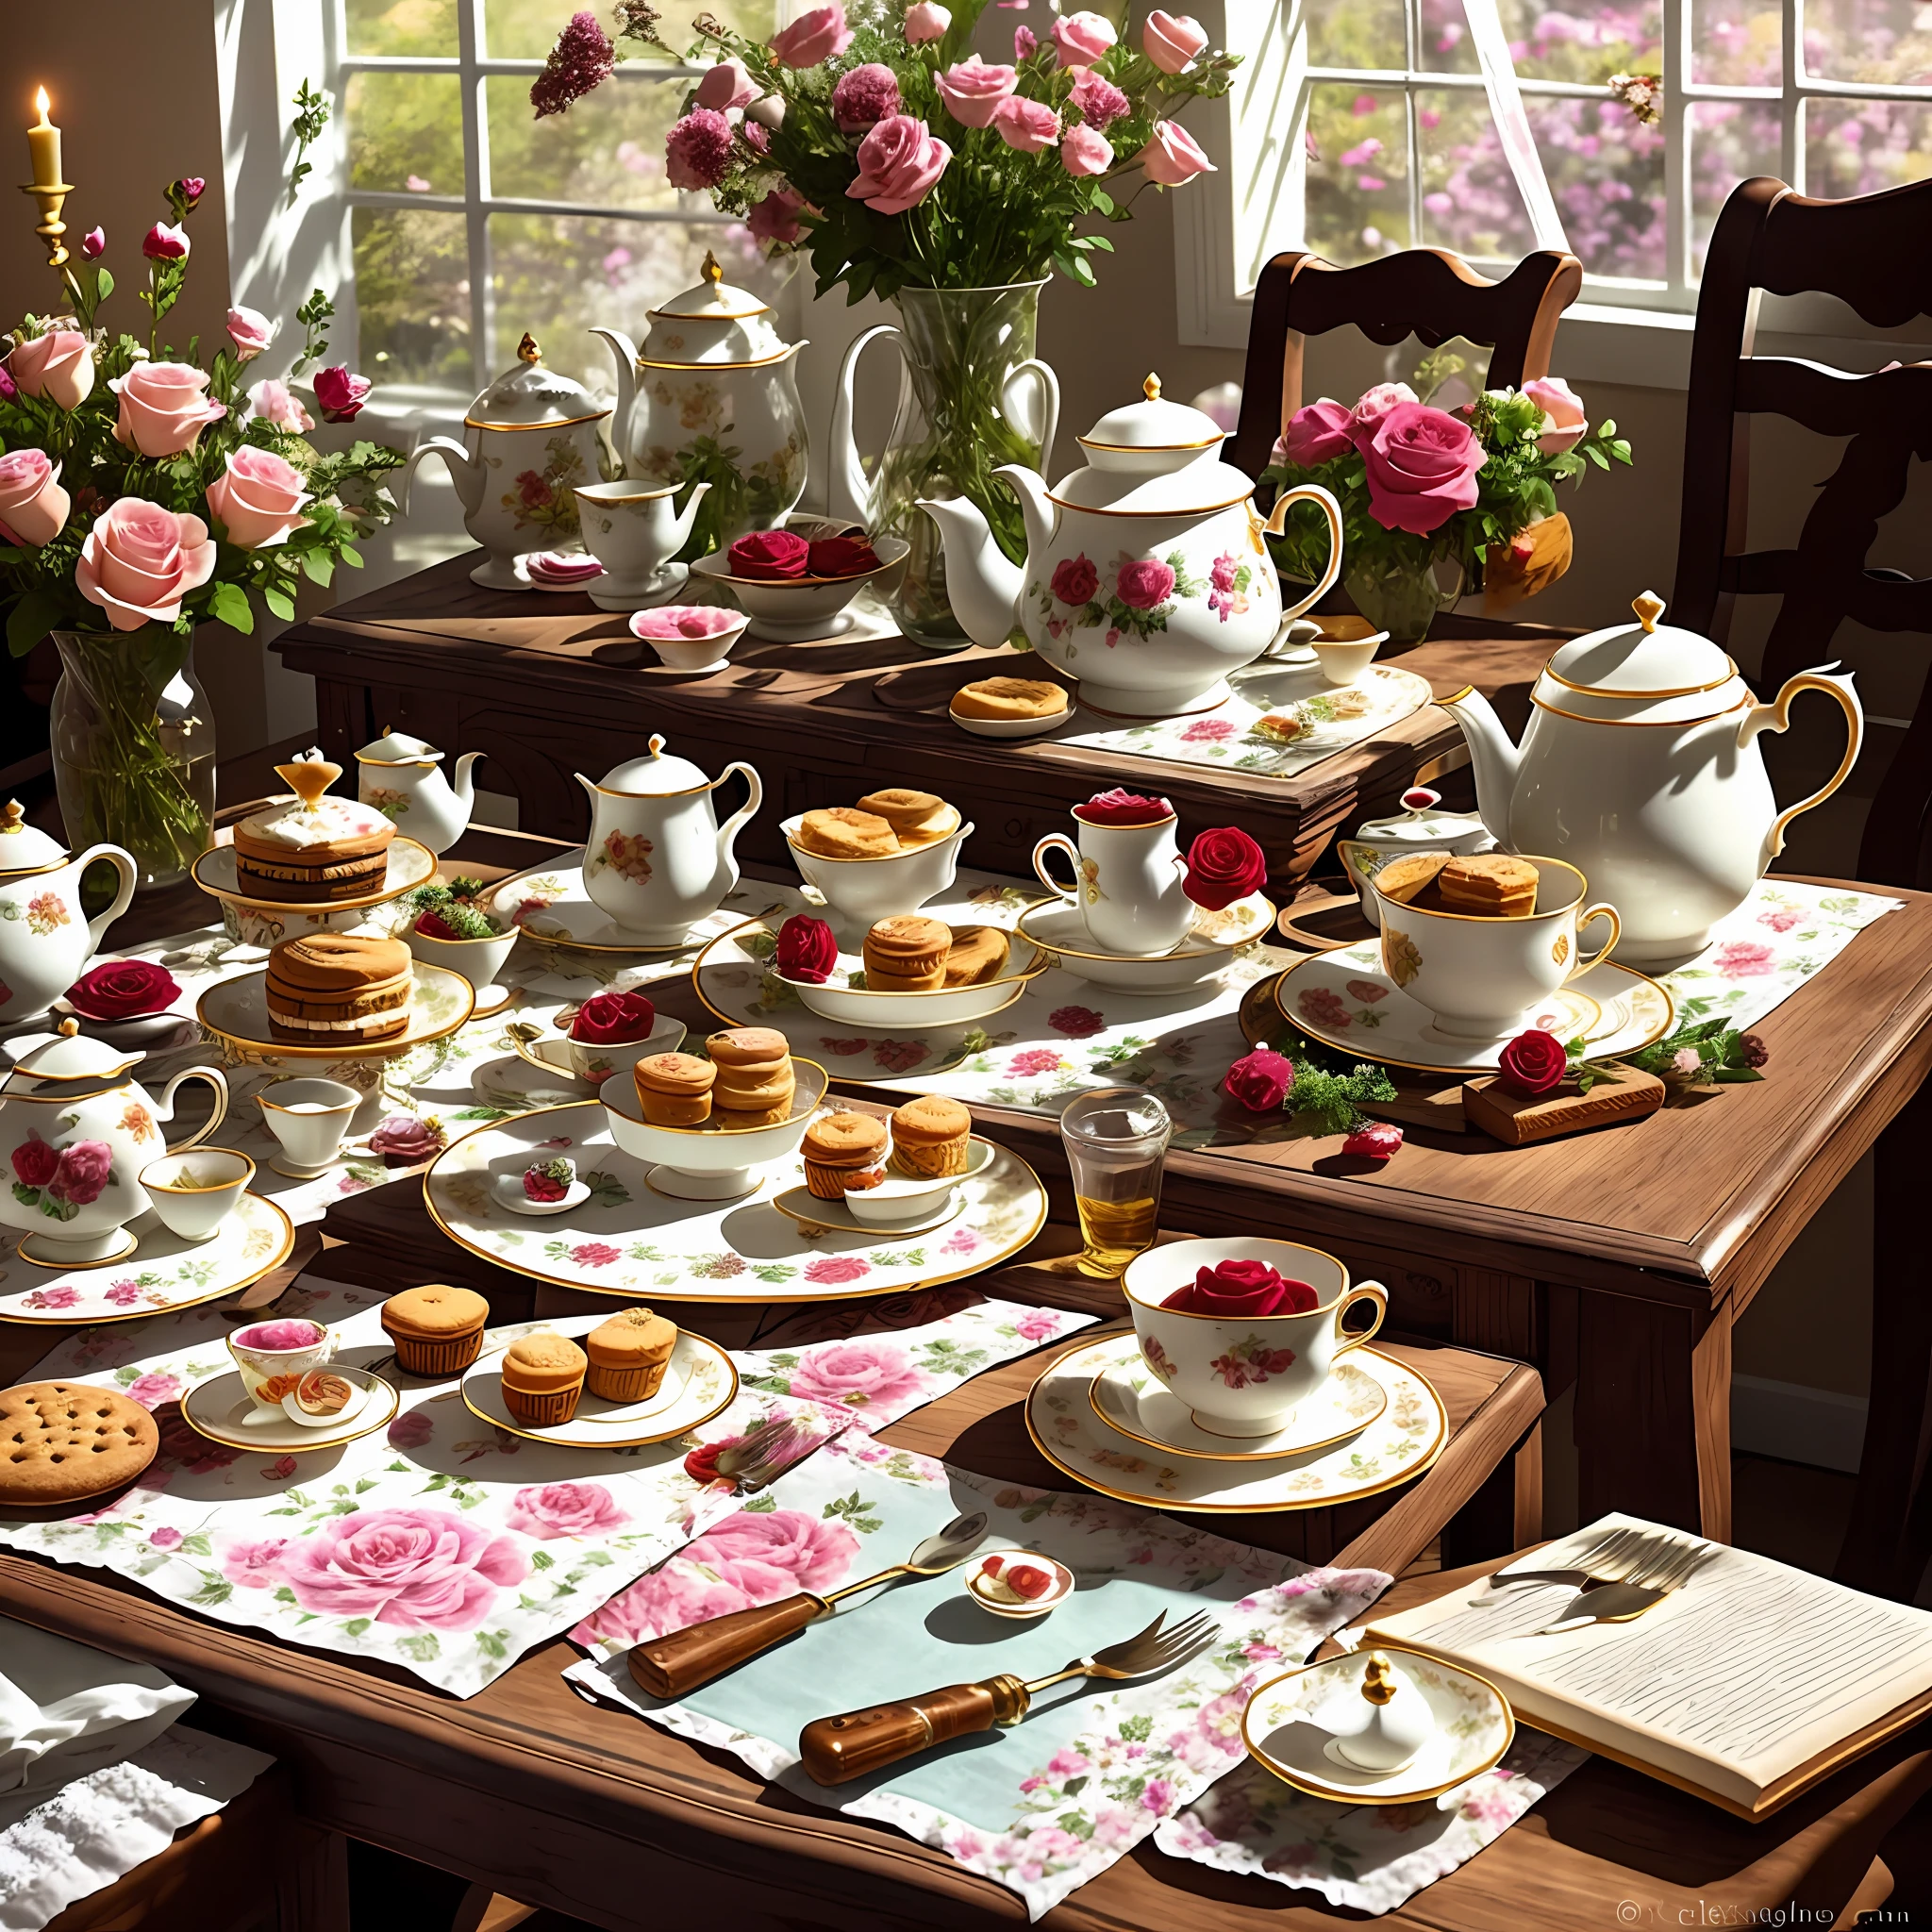 Une table avec des gâteaux, biscuits et rafraîchissements, un vase dans le coin supérieur gauche avec quelques belles roses insérées dedans, Tasses à thé et théières européennes sur la table, Thé européen de l&#39;après-midi, le soleil de l&#39;après-midi brille, image exquise et belle